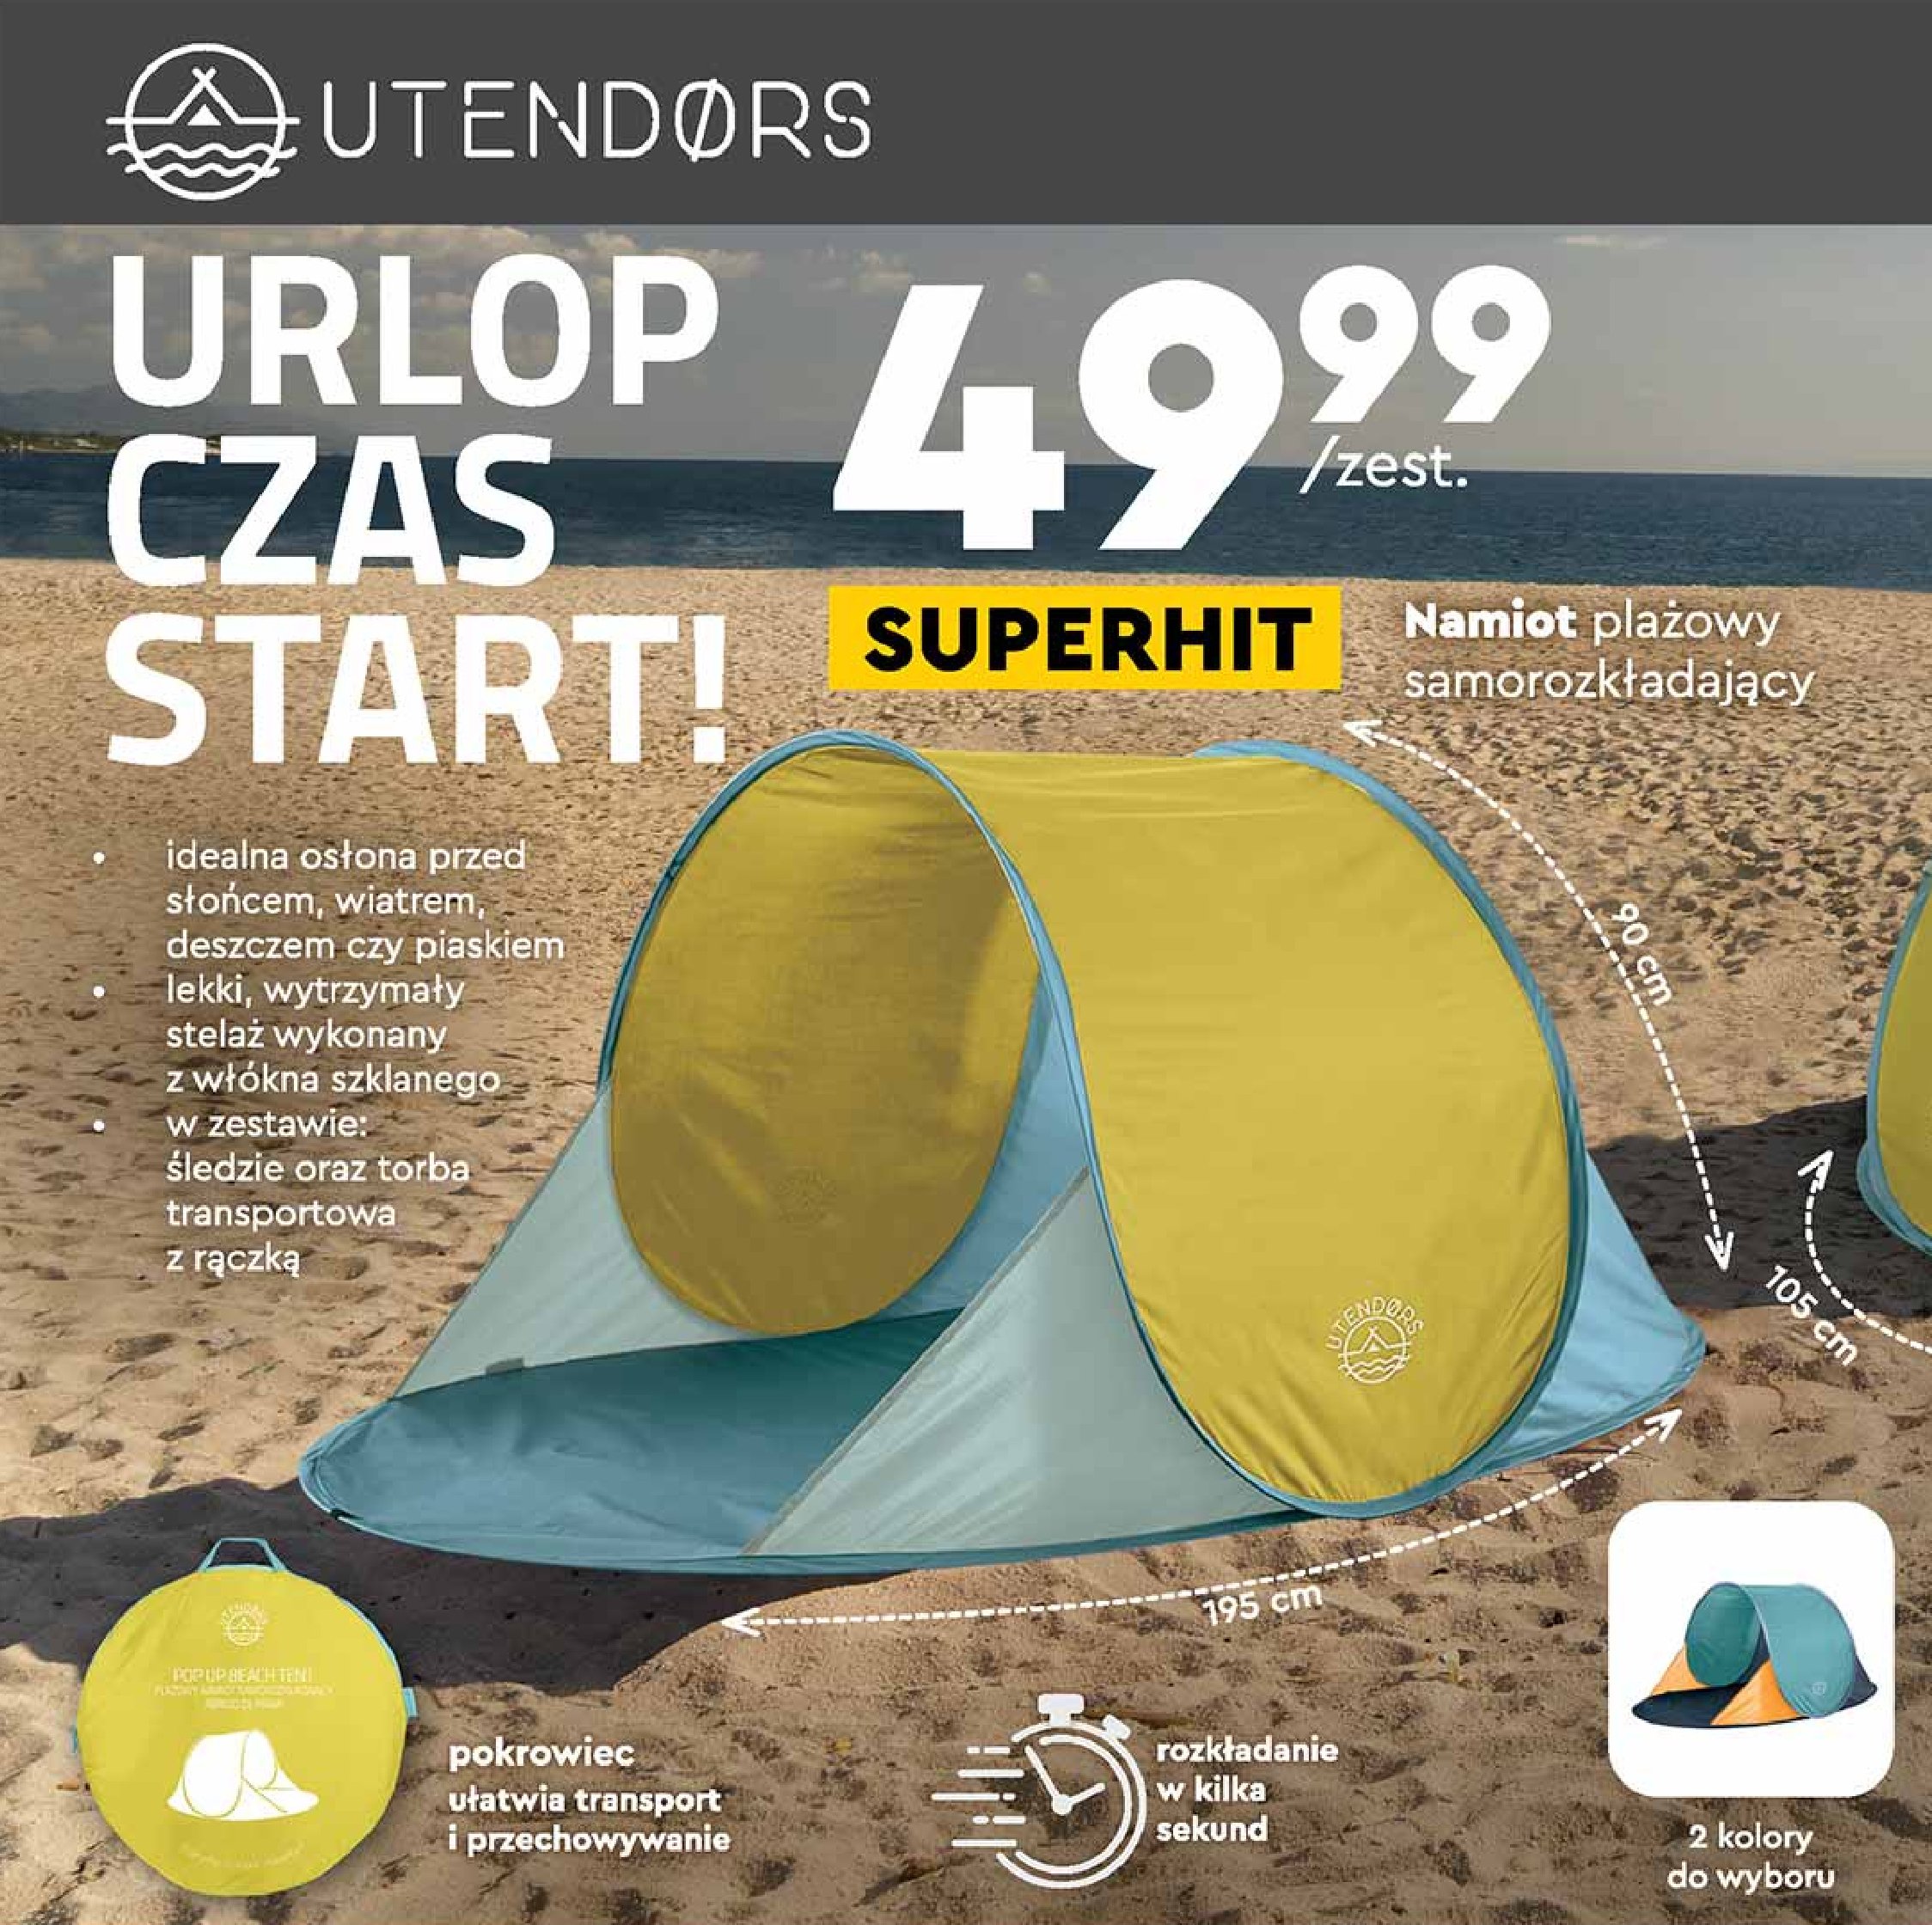 Namiot plażowy samorozkładający 195 x 90 cm Utendors promocje